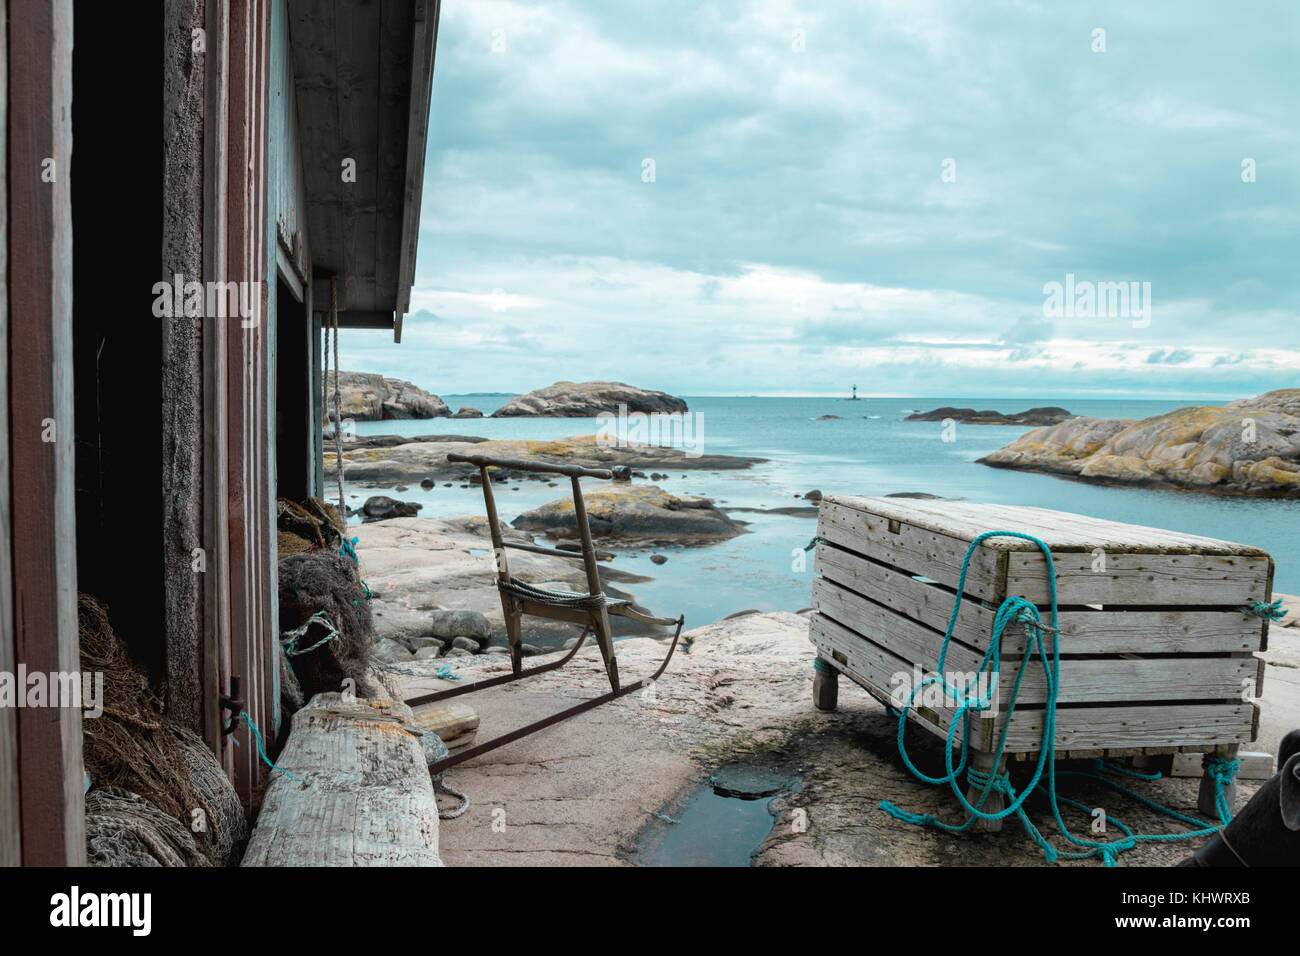 Isresting la trottinette des neiges scandinaves antiques dans la solitude à l'extérieur d'un bateau en bois flotté rustique maison entourée par l'océan bleu turquiose et pierre de granit gris Banque D'Images